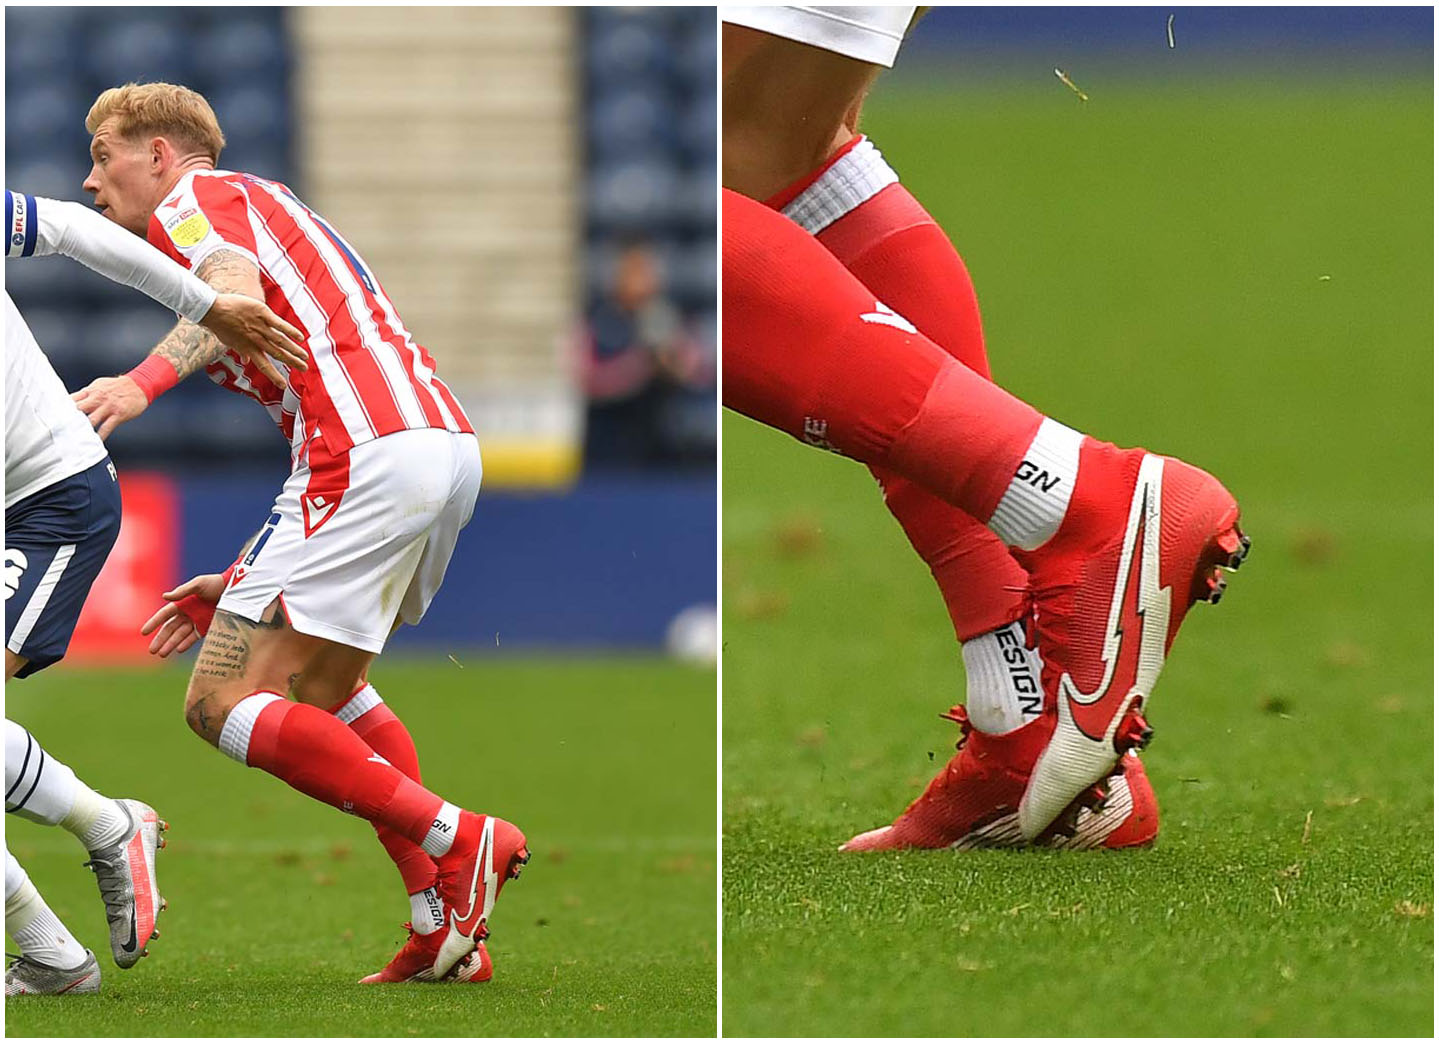 James McClean (Stoke City) tuần qua ra sân với đôi giày Nike Mercurial màu đỏ trắng độc lạ